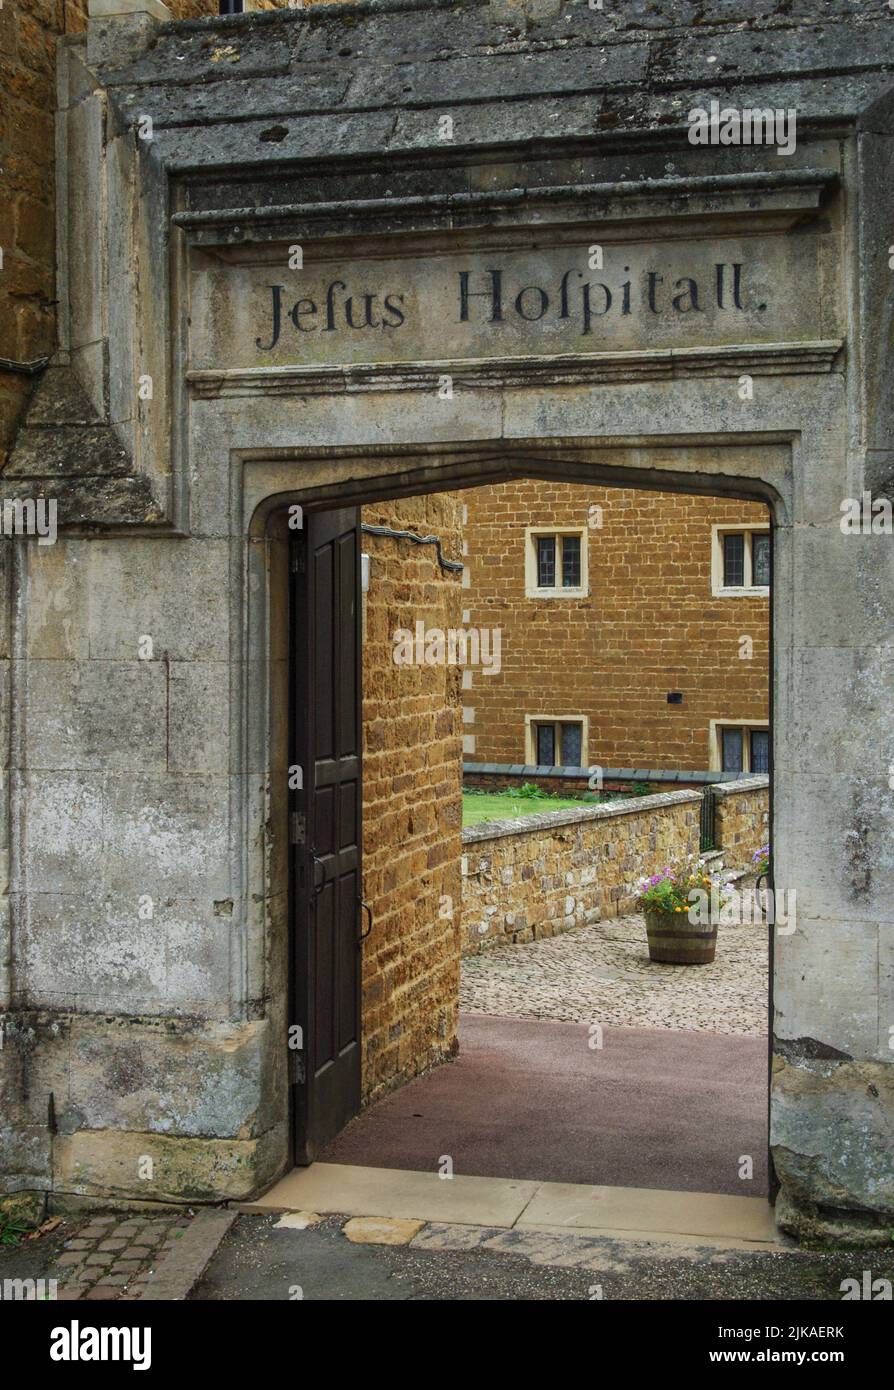 Entrada original, con inscripción al Hospital Jesus, construido en 1591, Rothwell, Northamptonshire, Reino Unido; llevando a los almshouses de una fecha posterior. Foto de stock